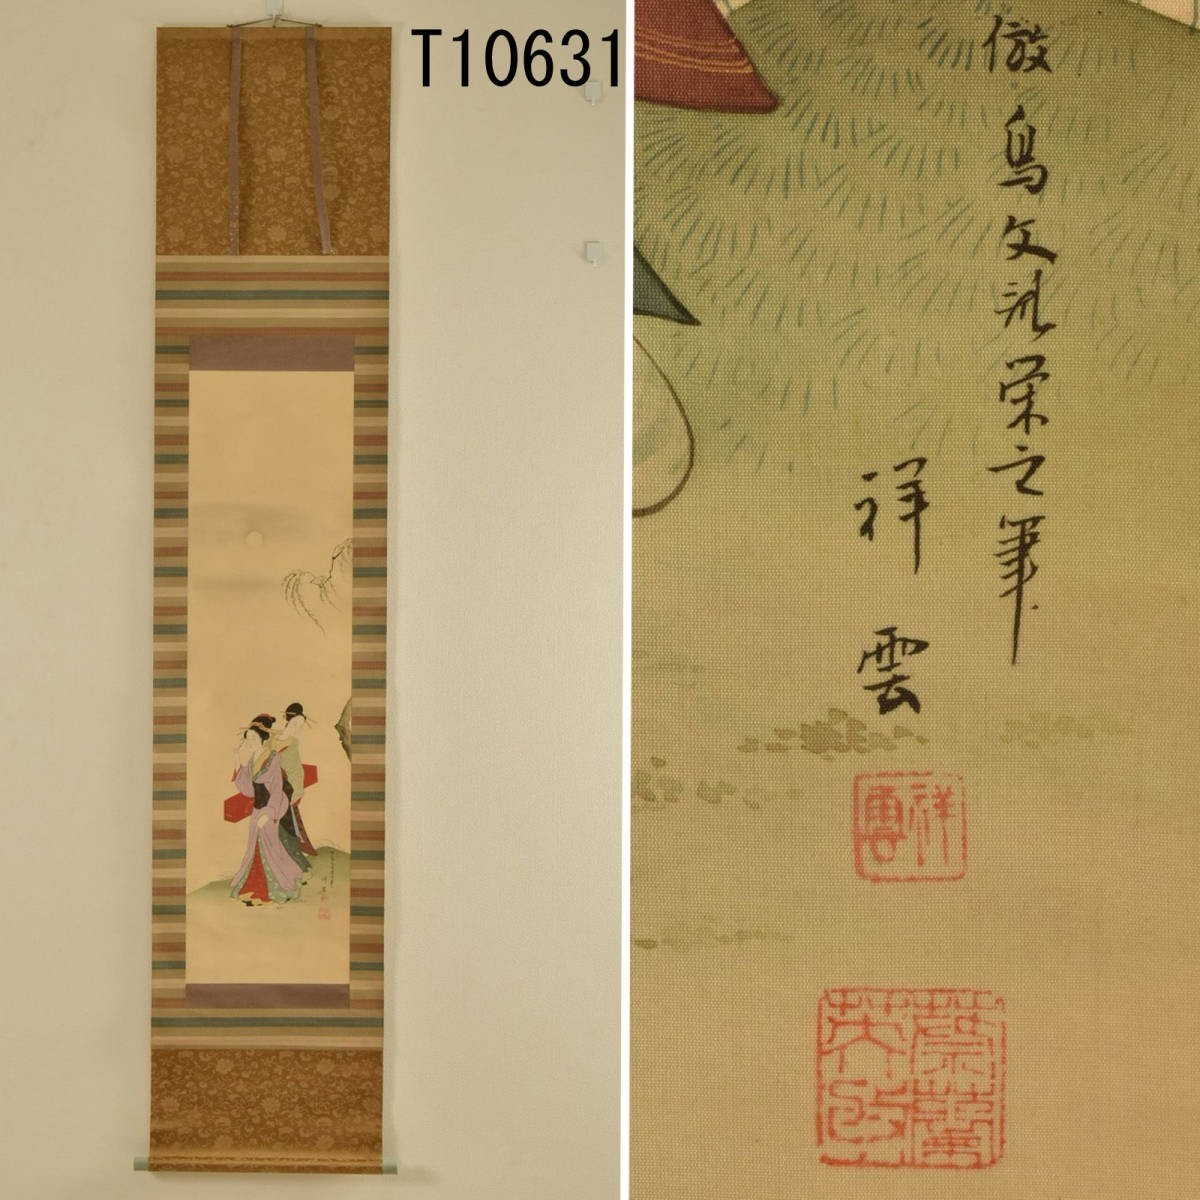 T10631 Shoun: Свиток, висящий на красивой женщине: подлинный, Рисование, Японская живопись, человек, Бодхисаттва